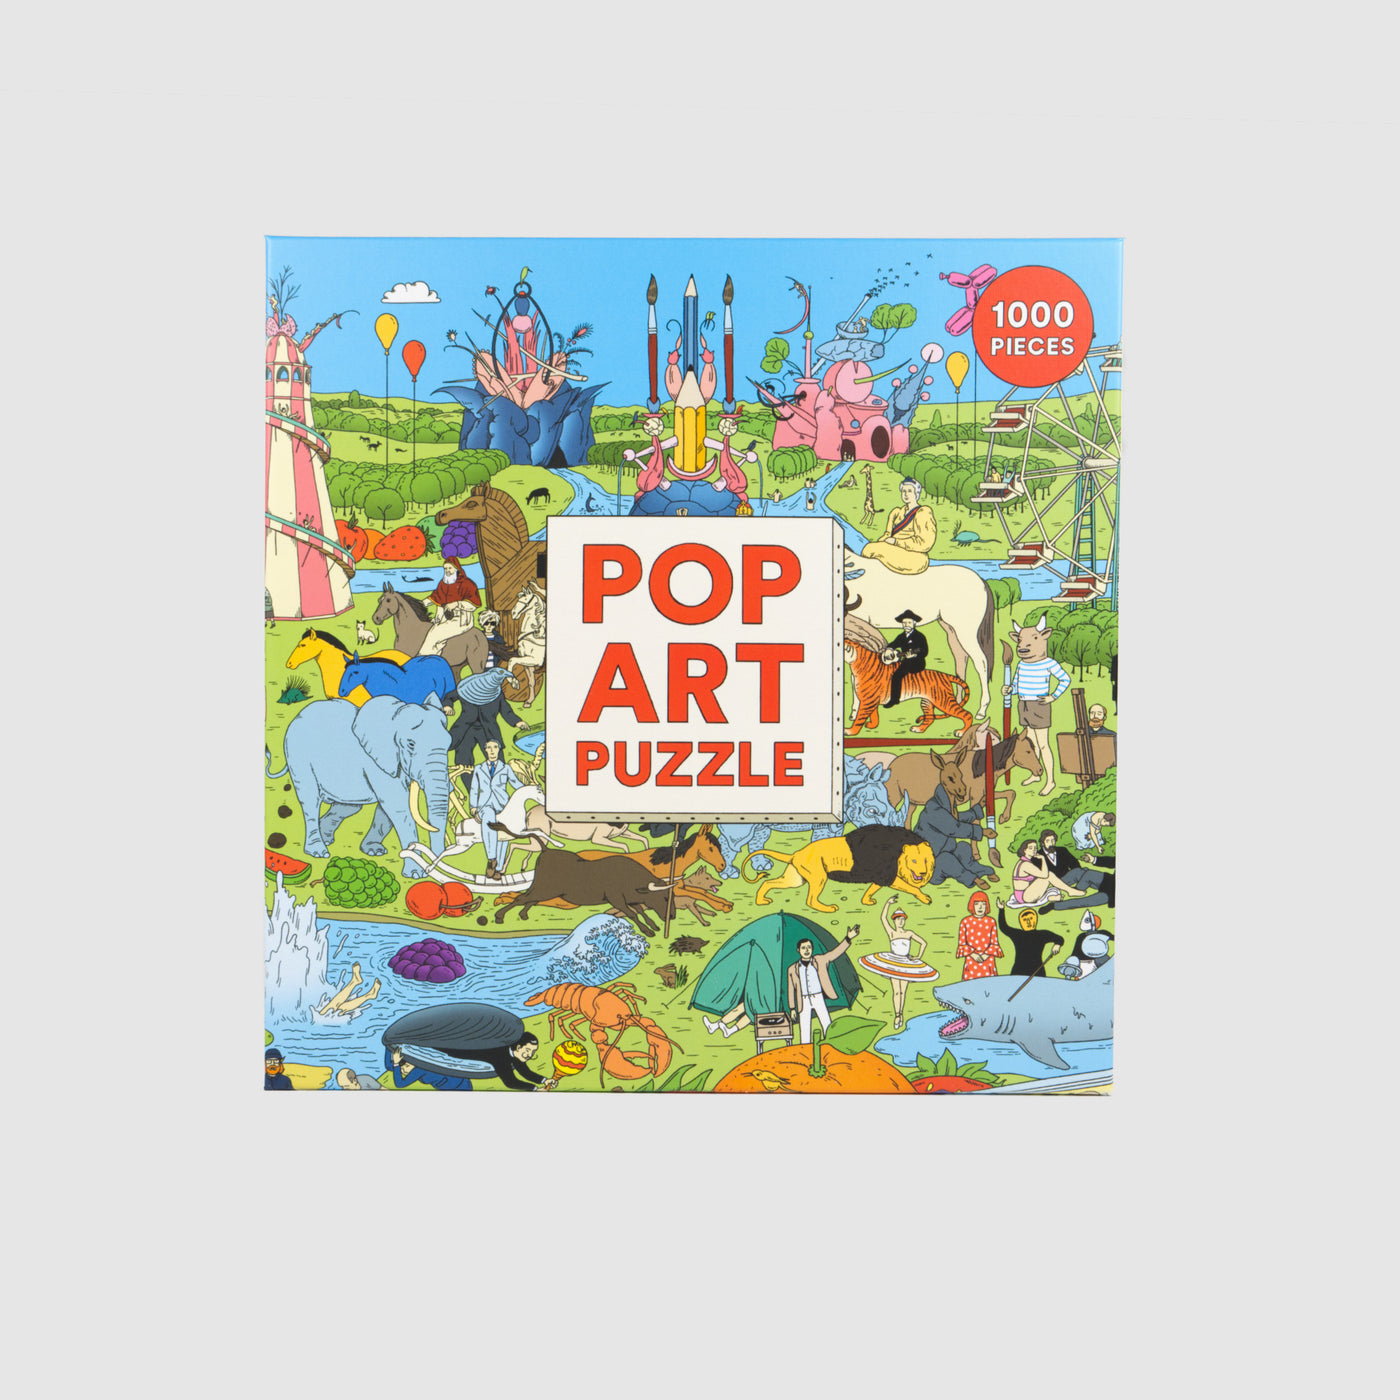 Pop Art Puzzle -1000 Piece Jigsaw Puzzle